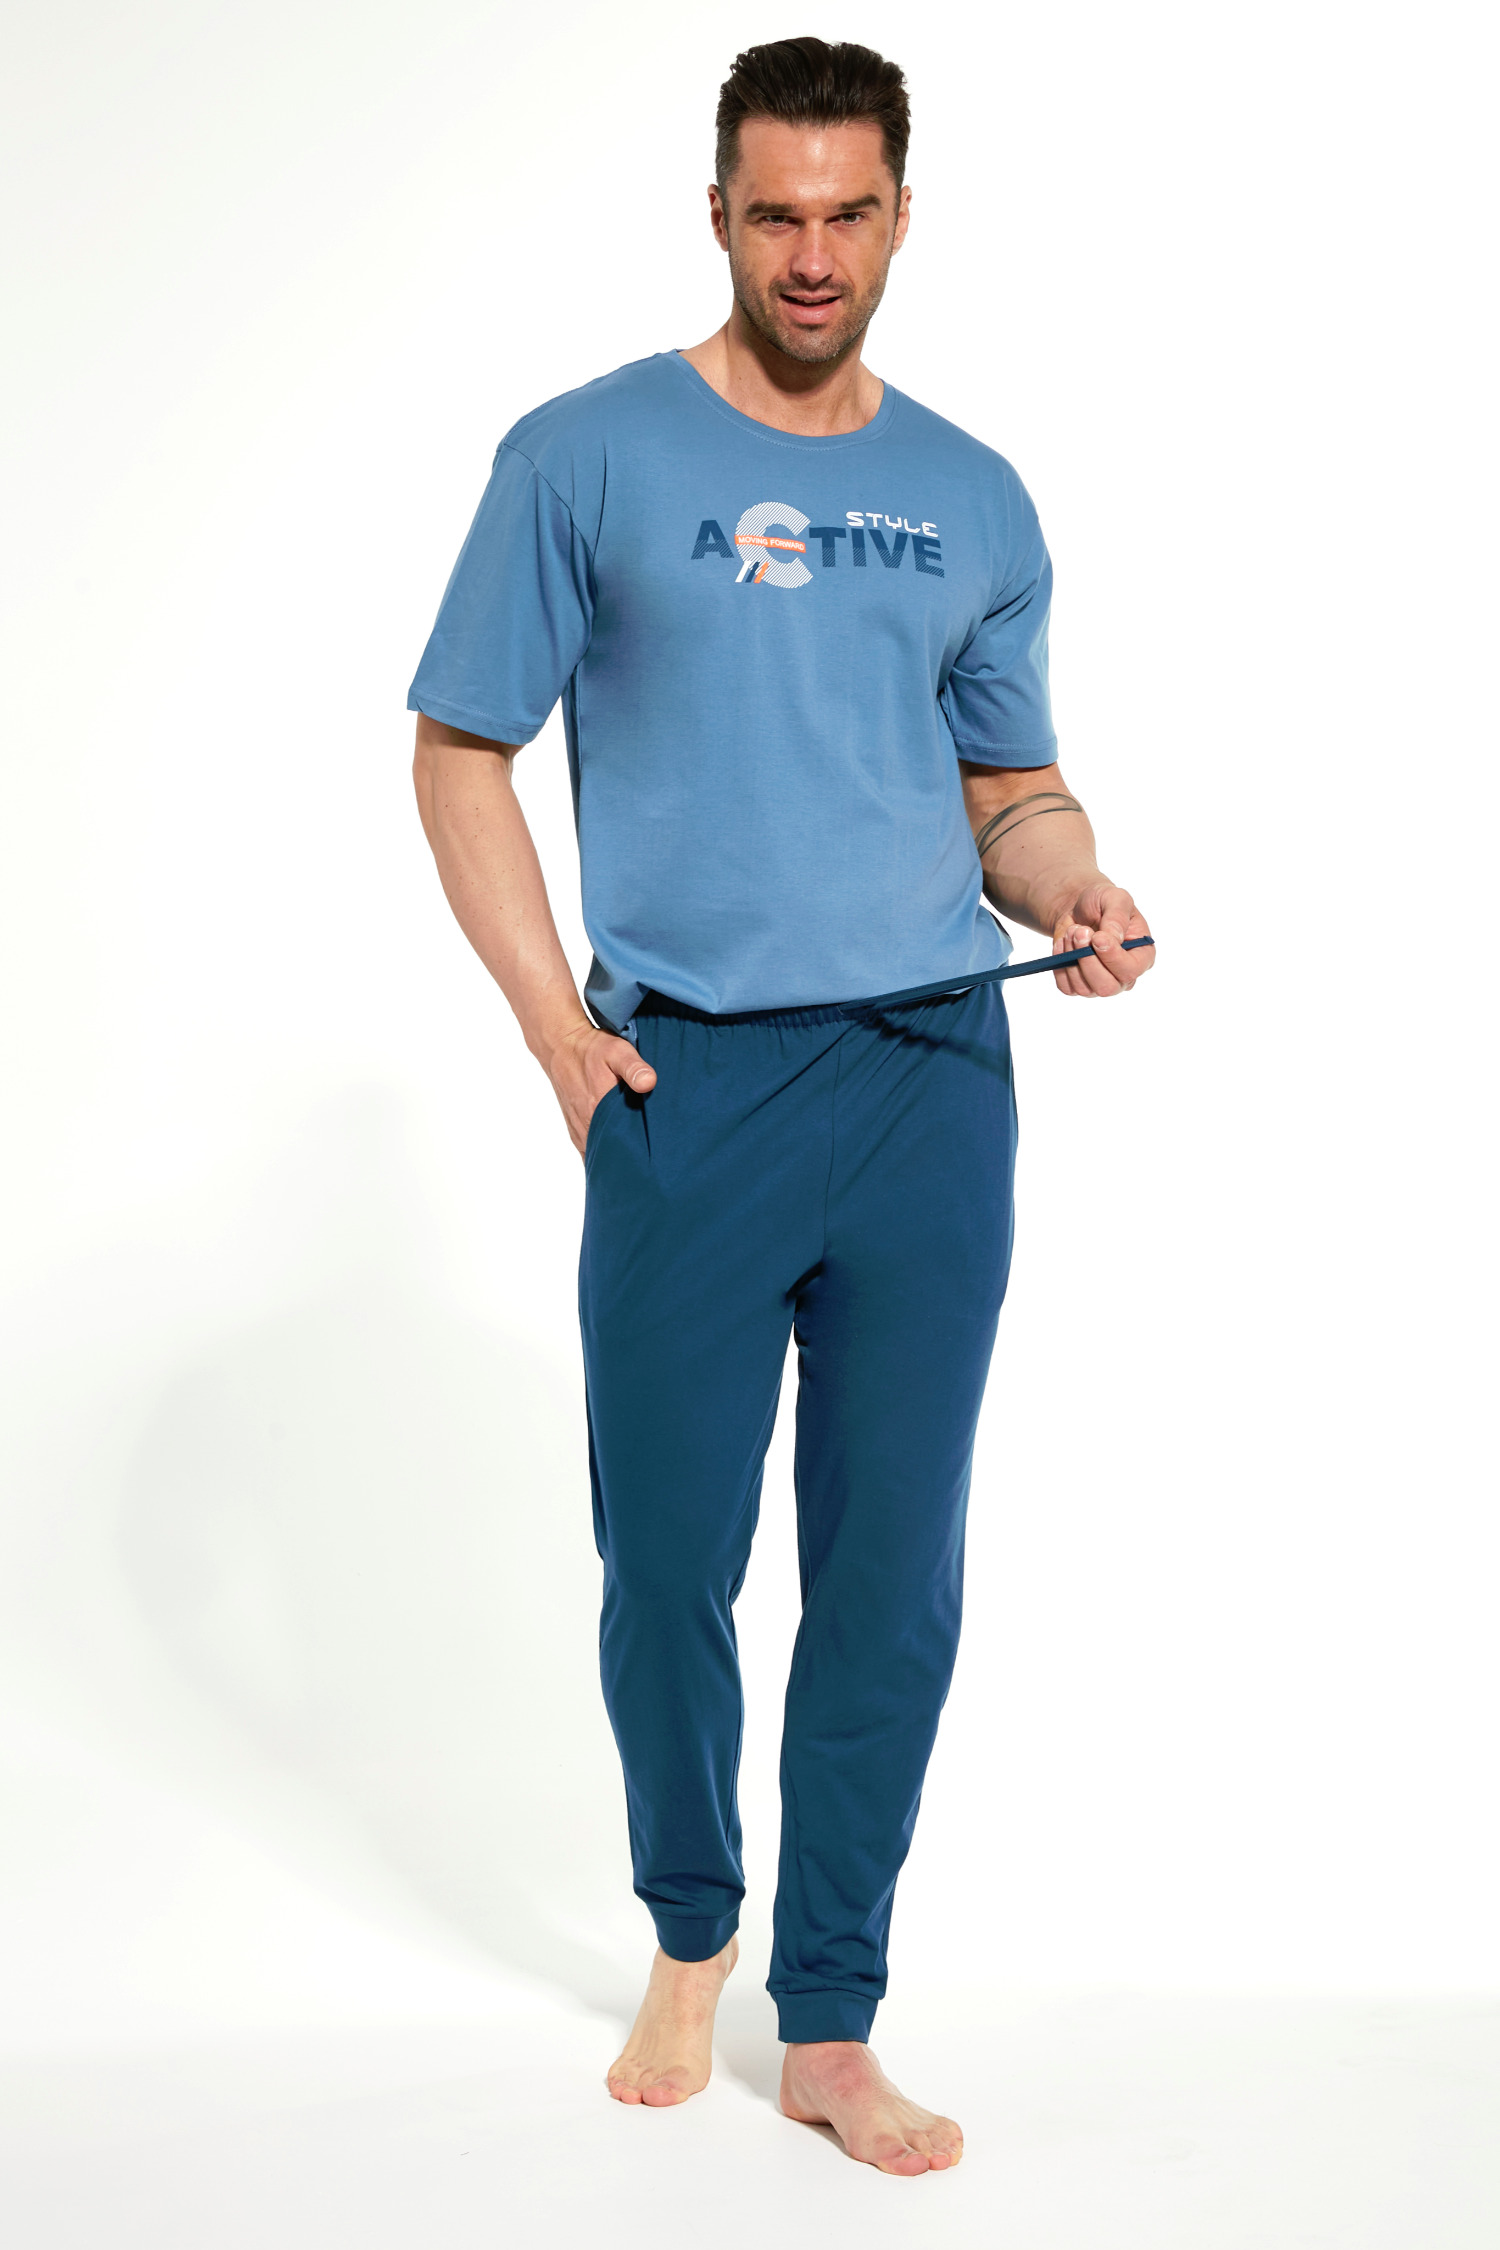 Pánské prádlo | Cornette pyžamo pánské 462/206 Active 2 - modrá, XXL ...